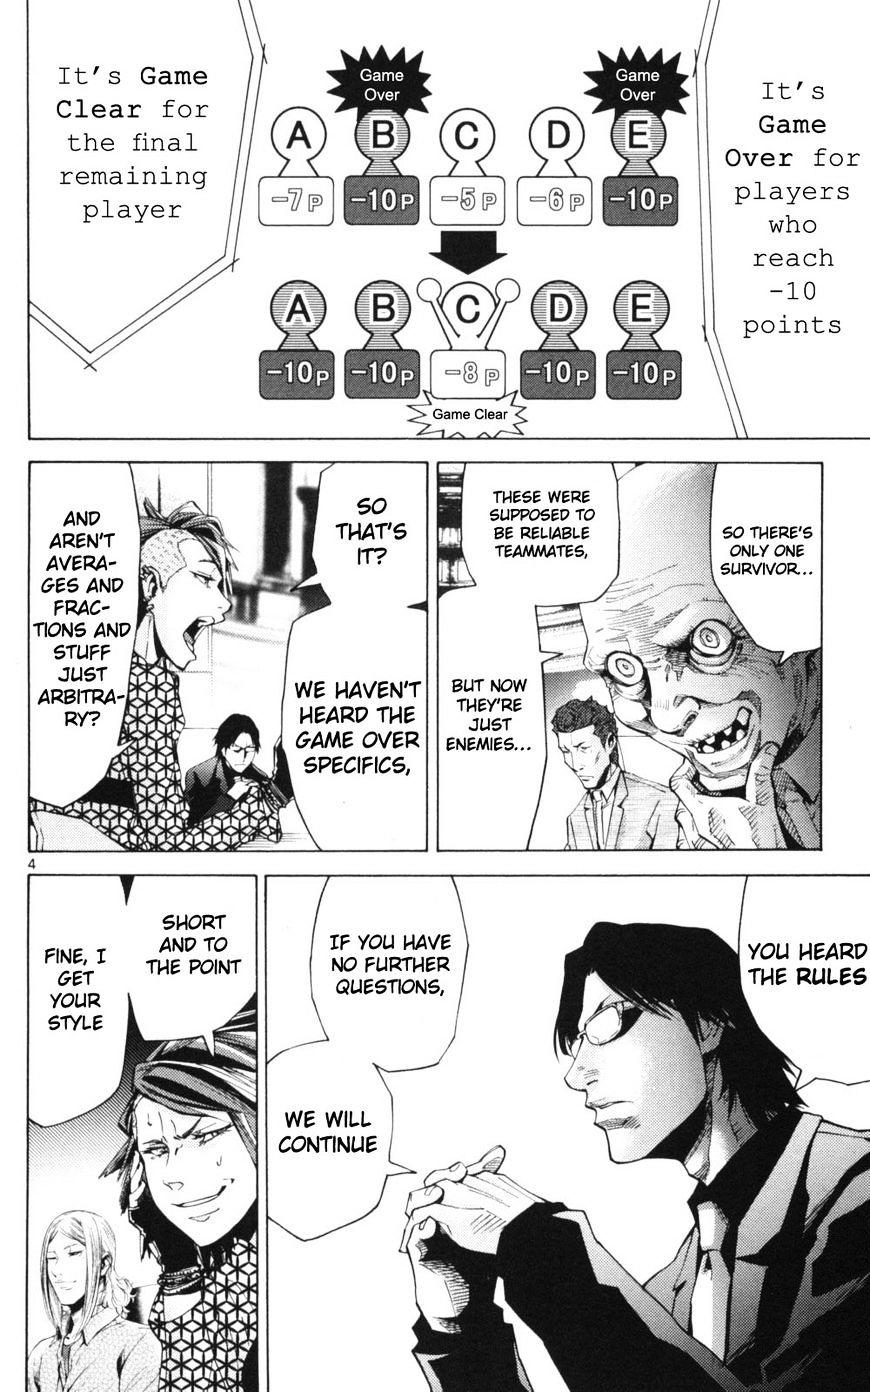 Imawa No Kuni No Alice Chapter 51.2 : Side Story 6 - King Of Diamonds (2) page 4 - Mangakakalot